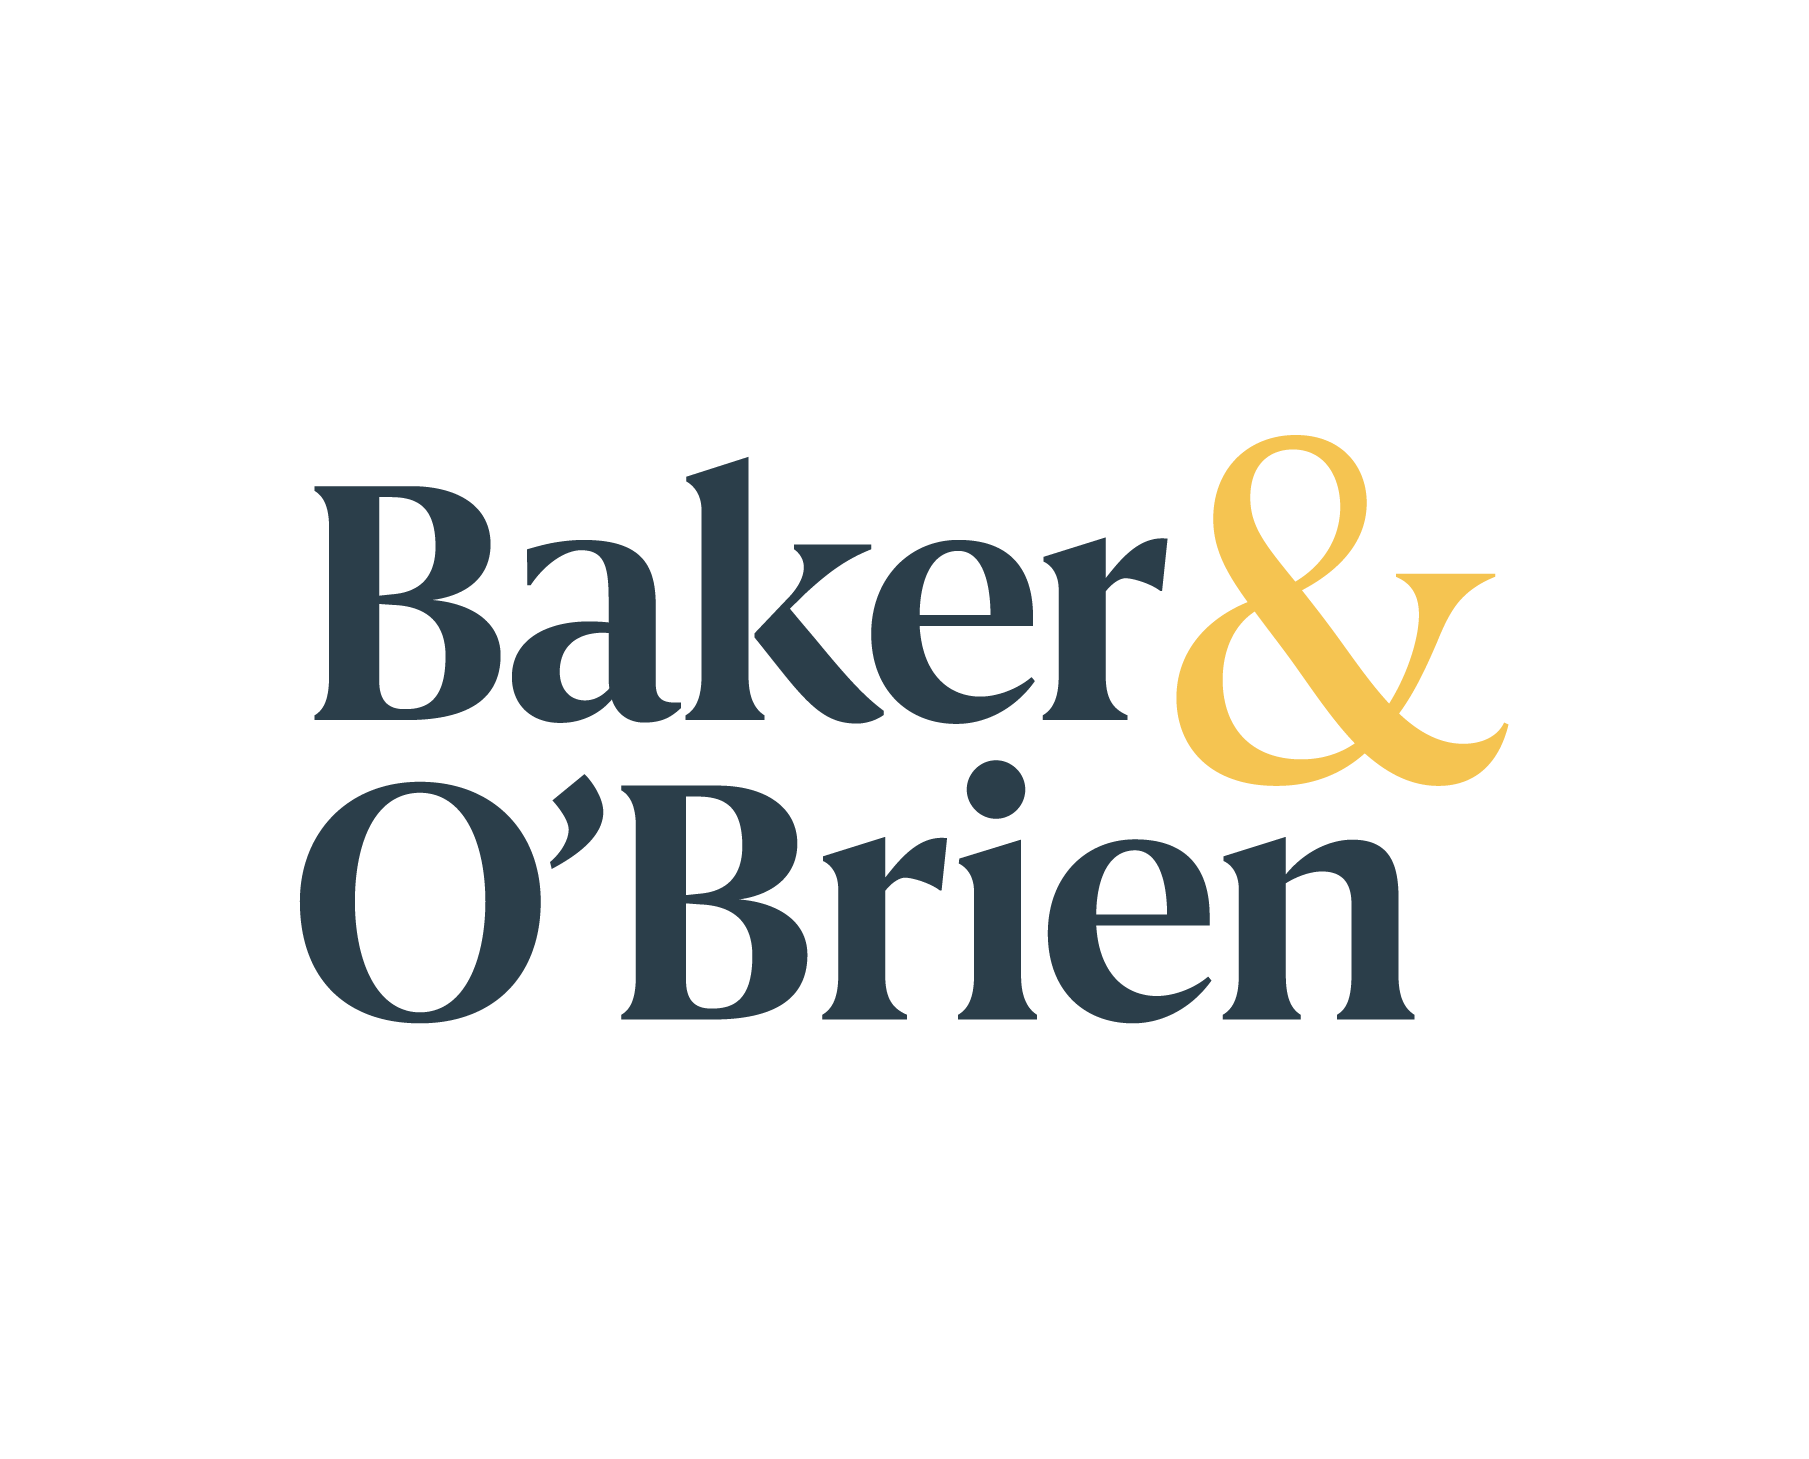 Baker Obrien